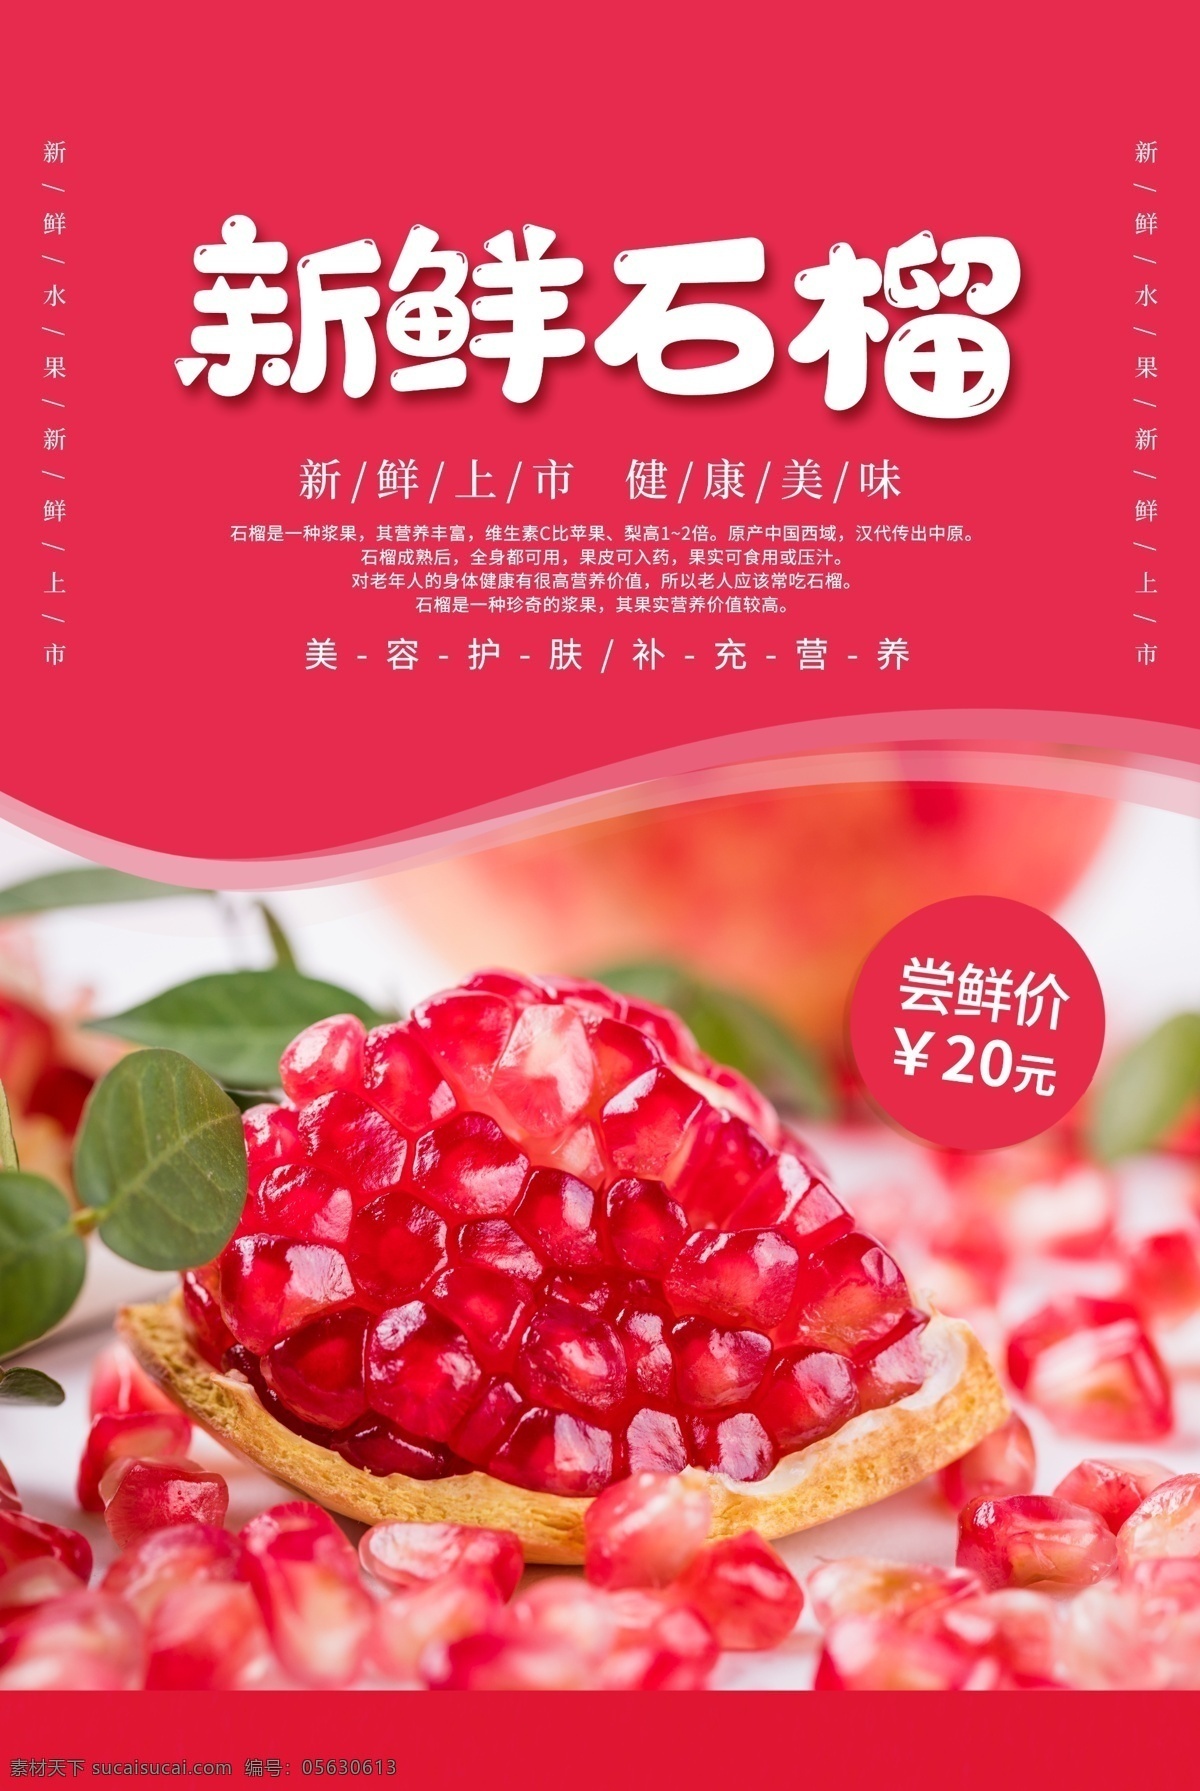 新鲜 石榴 水果 宣传 活动 促销 海报 饮料 饮品 甜品 类